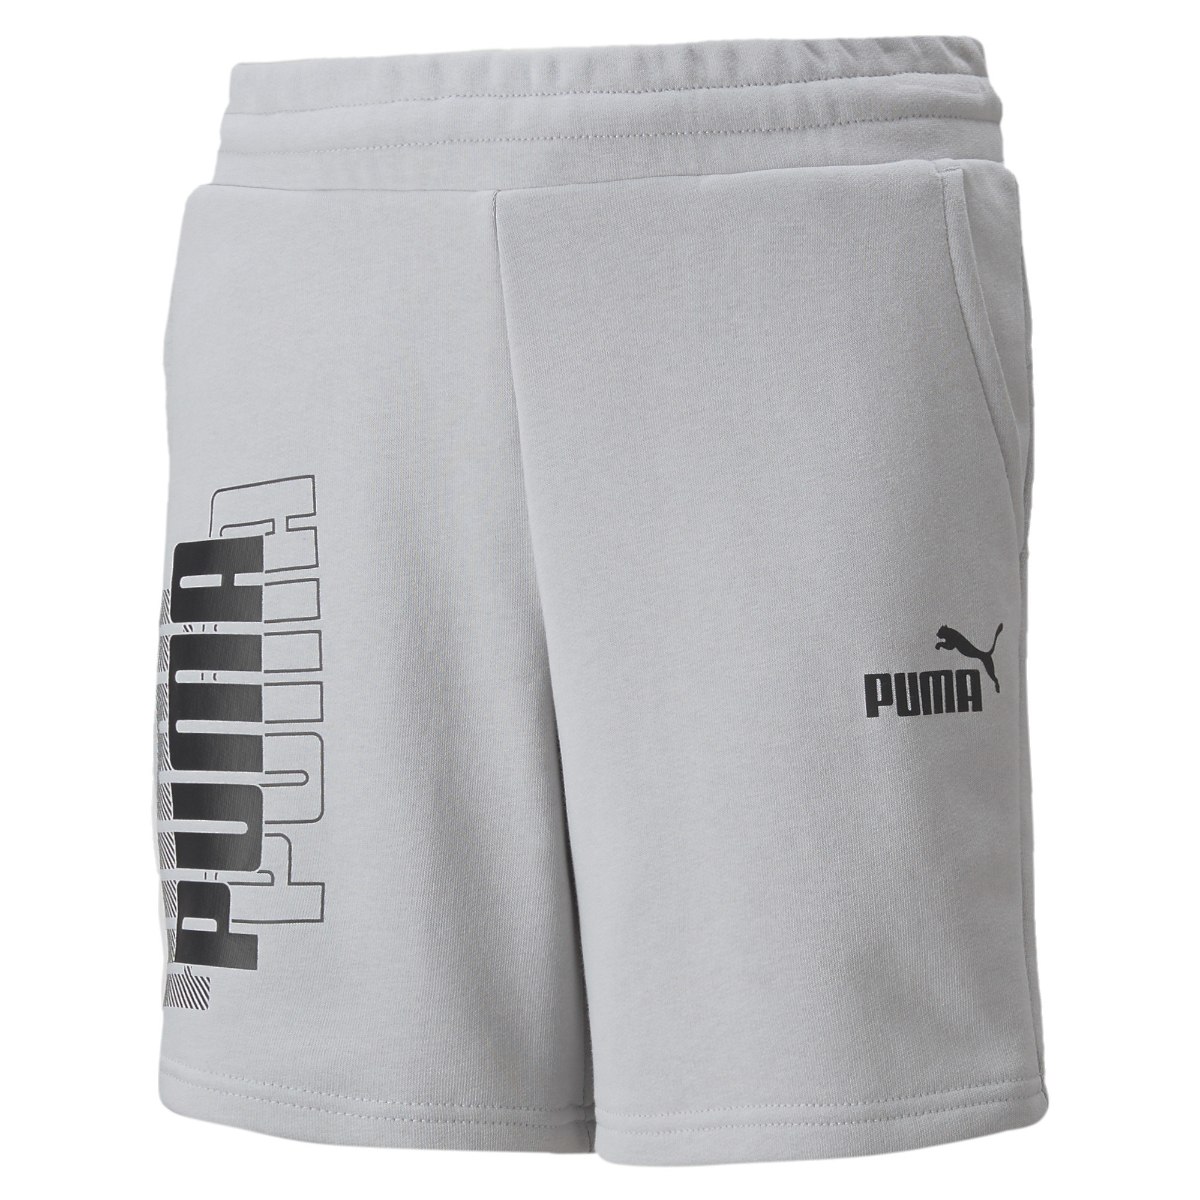 מכנס קצר אפור  לוגו PUMA (3-16)